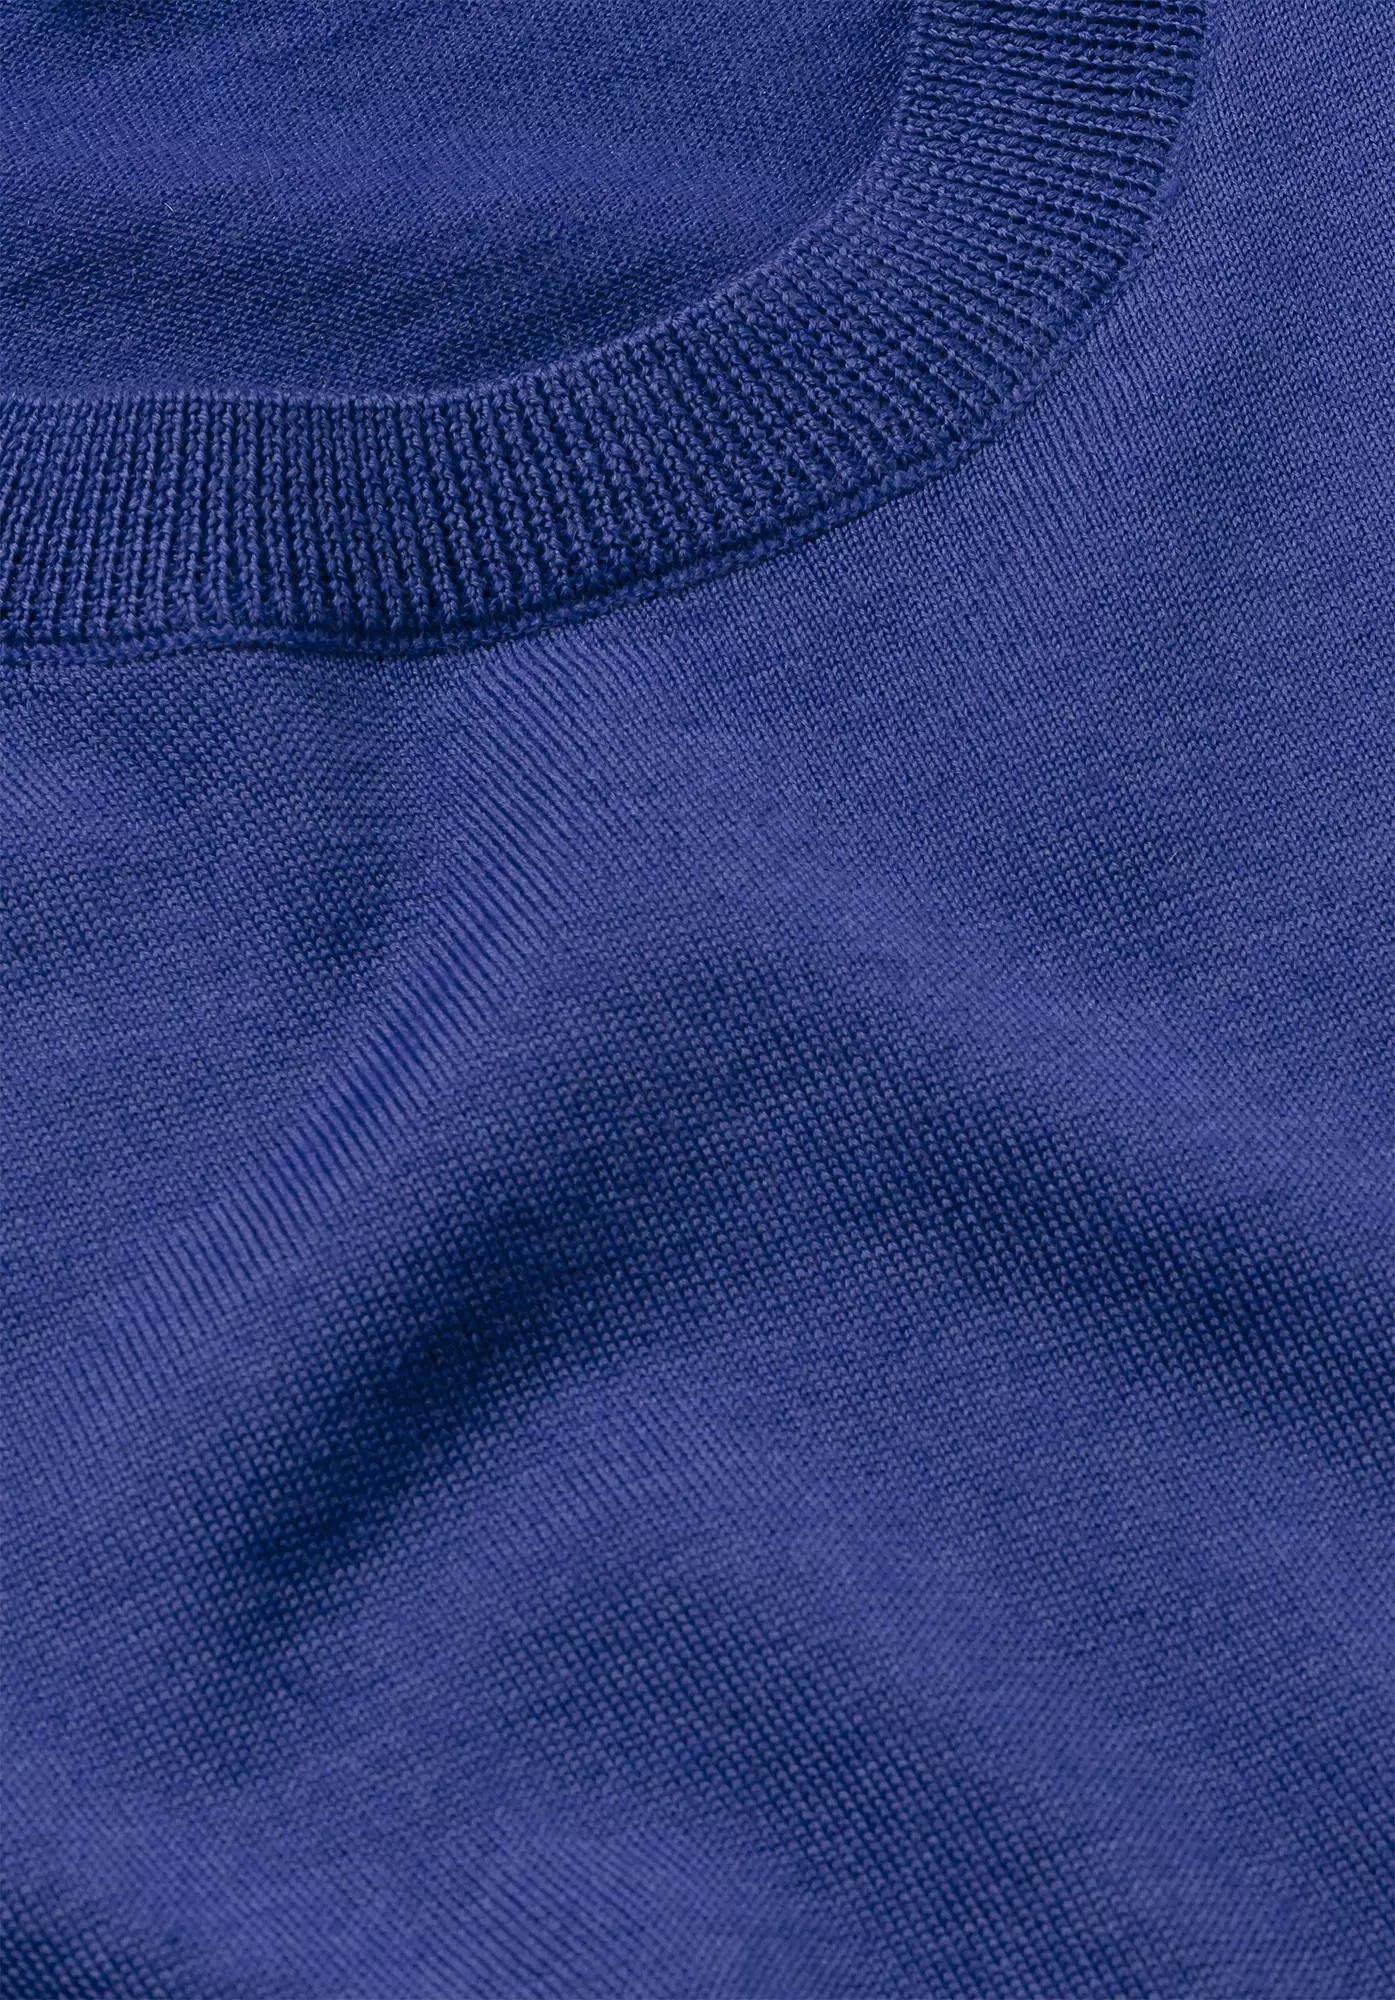 Fine regular sweater made from pure organic merino wool - 5